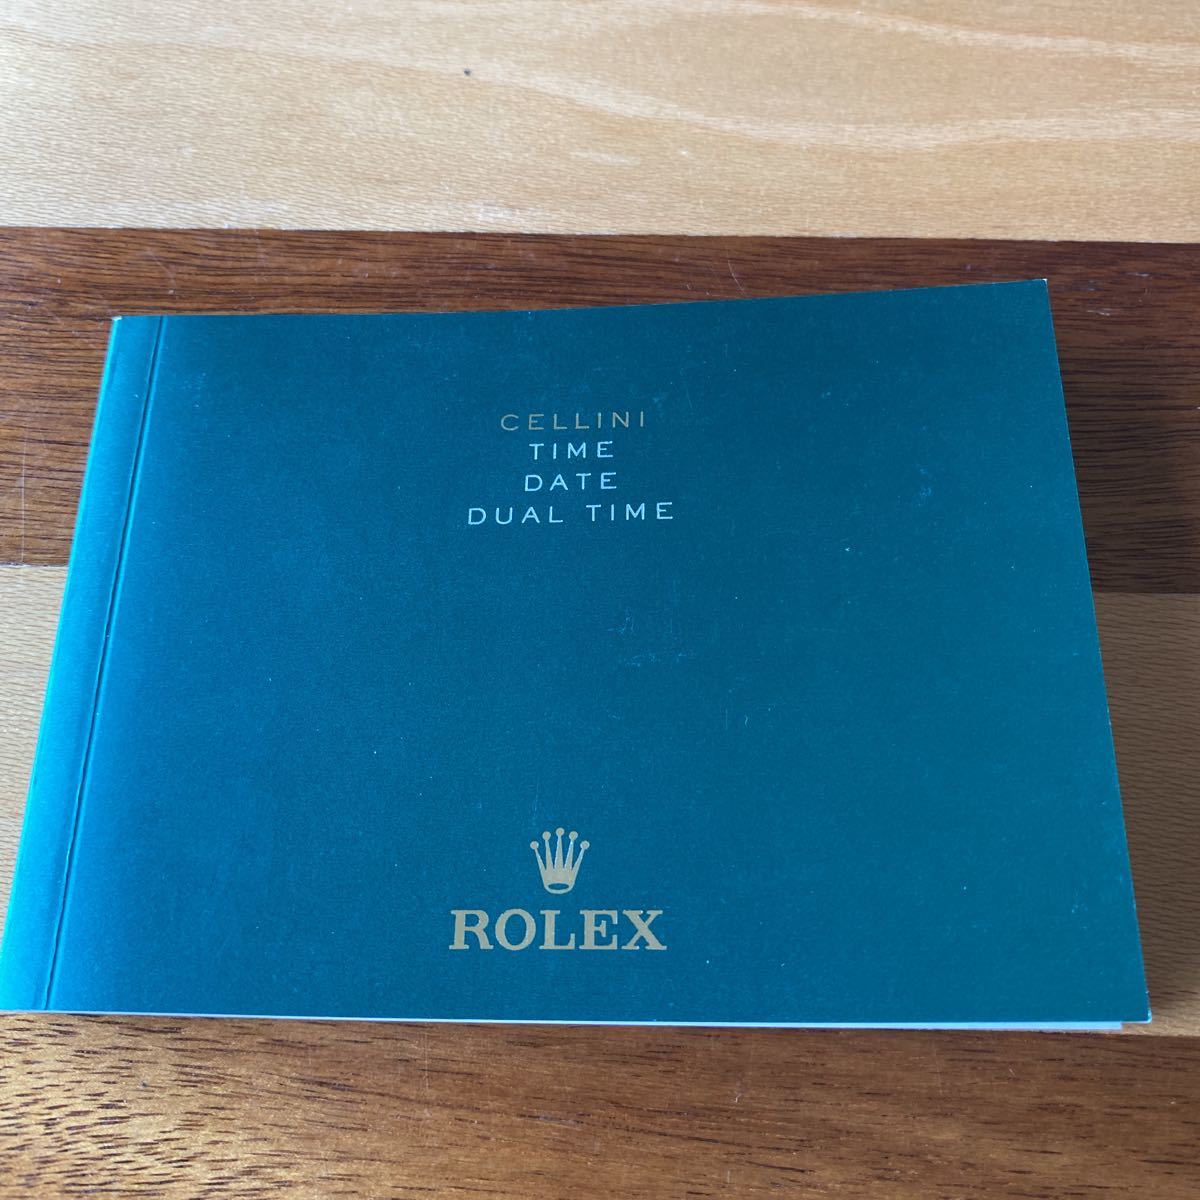 2261【希少必見】ロレックス チェリーニ冊子 ROLEX CELLINI TIME DATE DUAL TIME 2016年度版_画像1